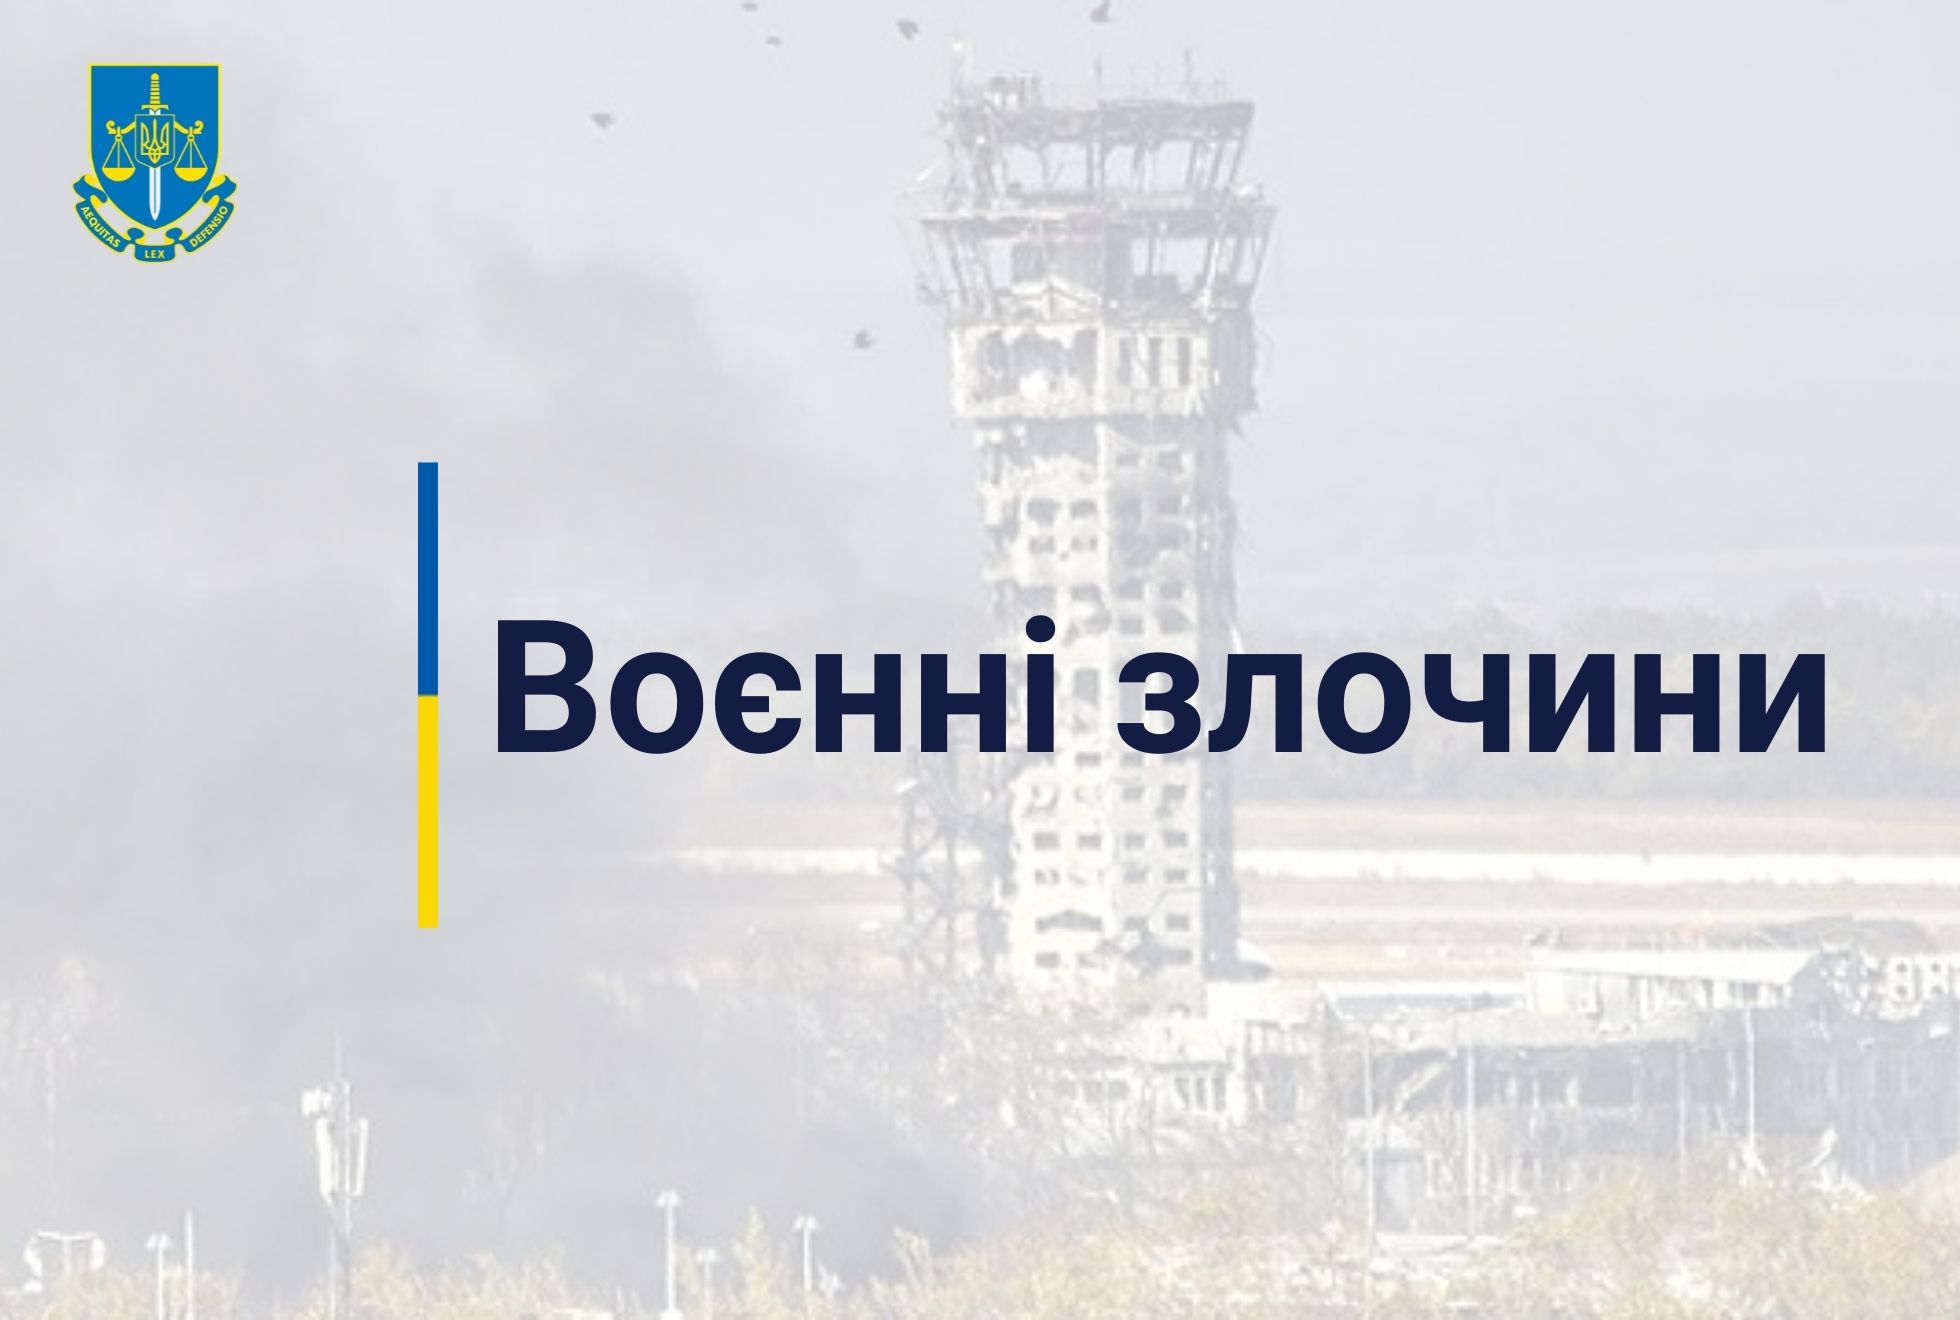 Артобстріли і ракетні удари по населених пунктах Донеччини - розпочато розслідування